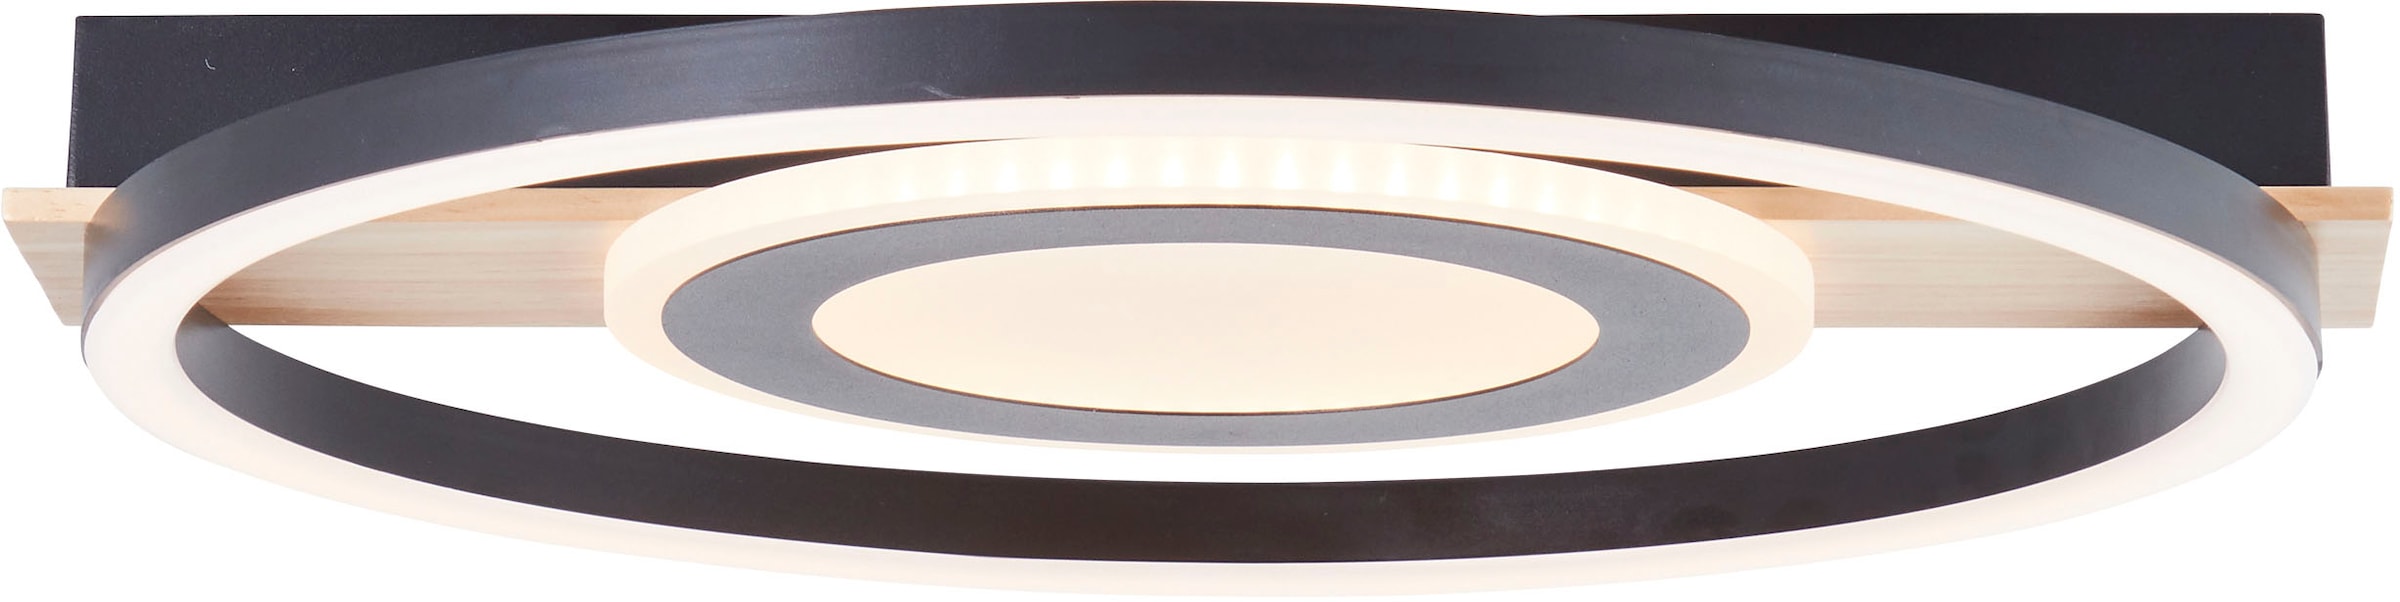 my home LED Deckenleuchte »Lysann Deckenlampe«, 39 x 37 cm, 22 W, 2900 lm, 3000 K, Holz/Metall, braun/schwarz